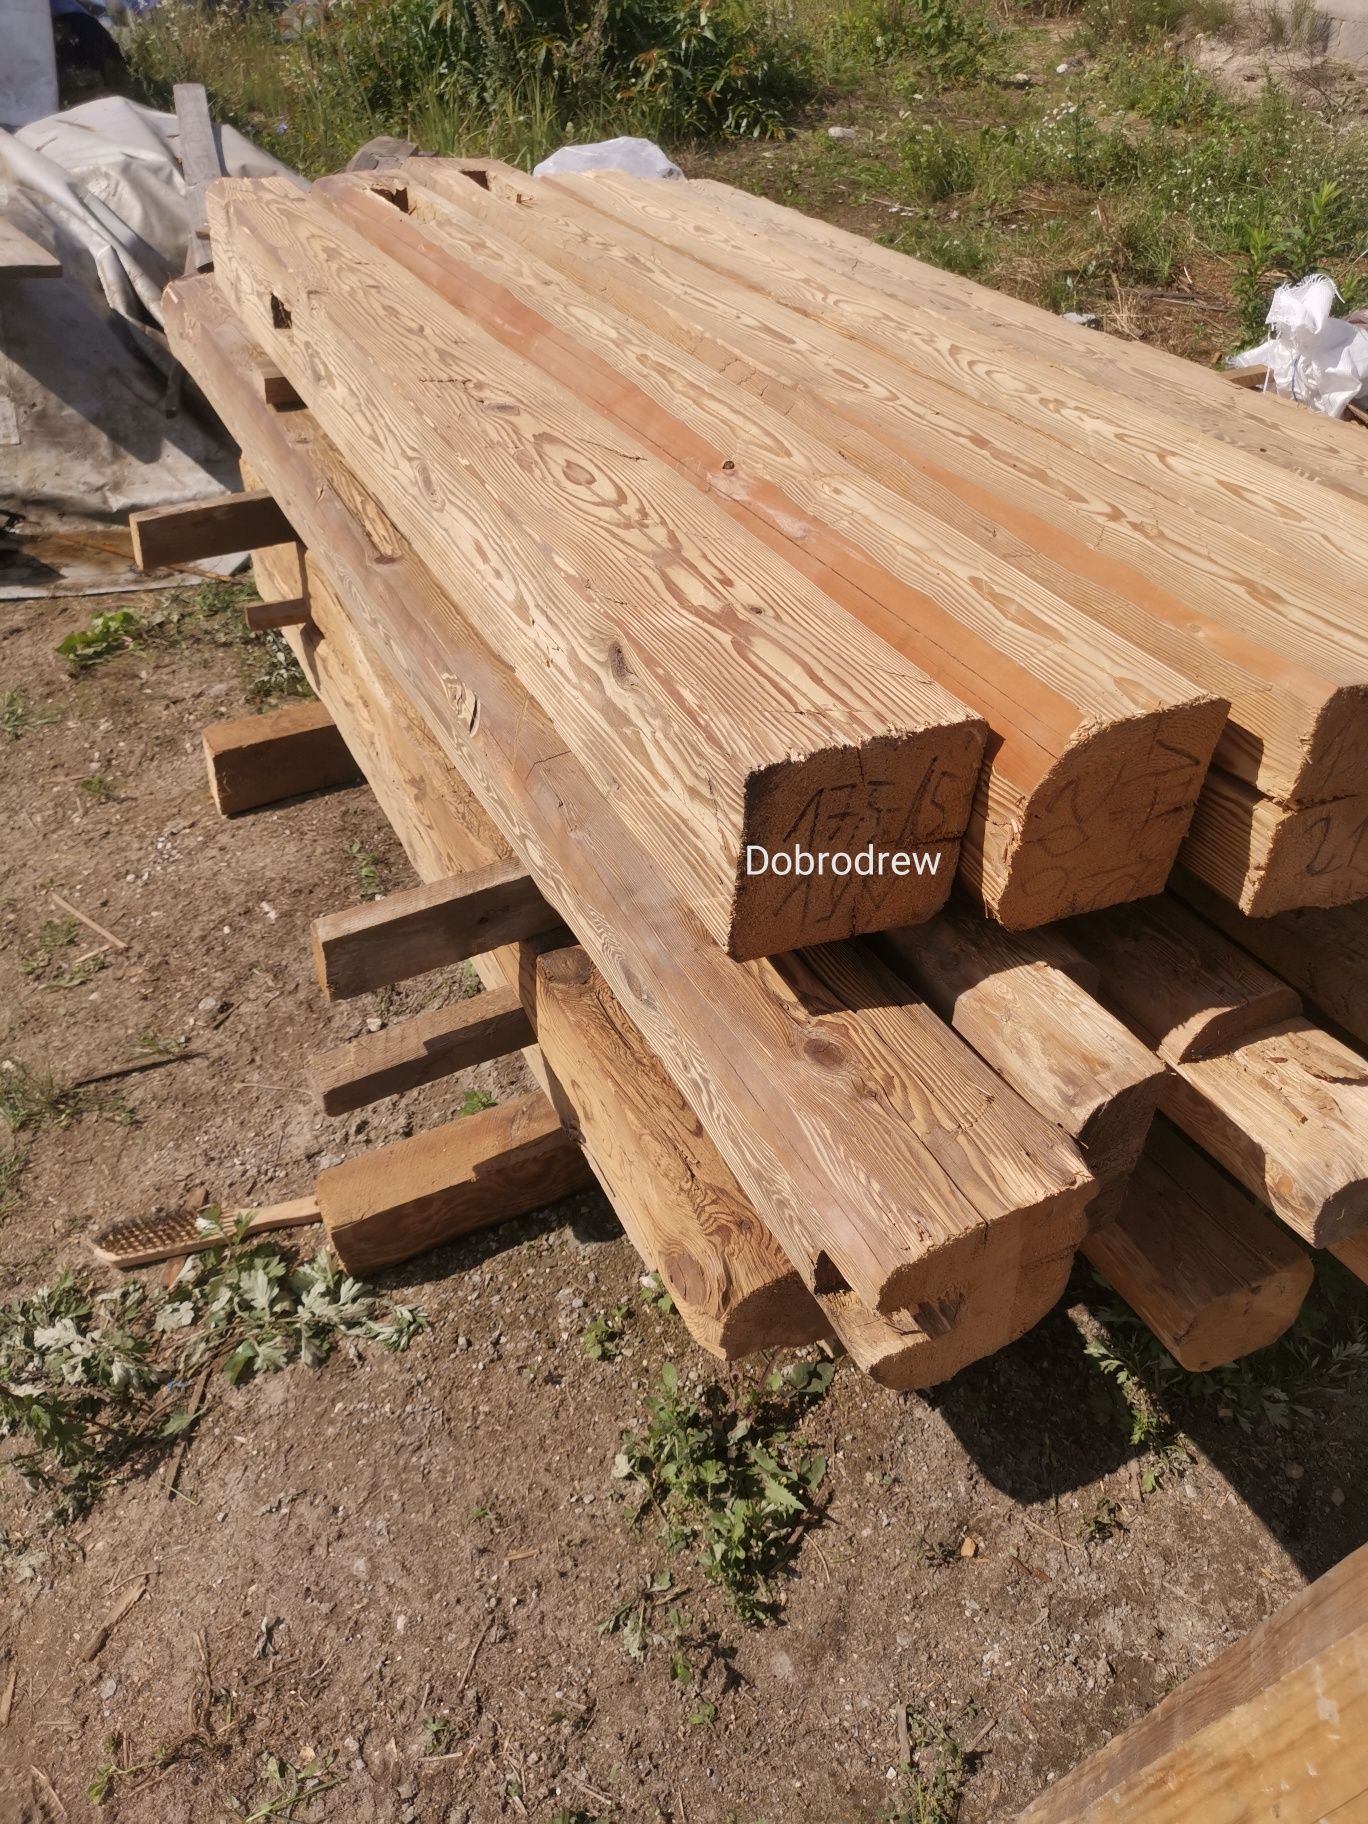 Stare drewno belki bale deski duzy wybór starego drewna z duszą, loft